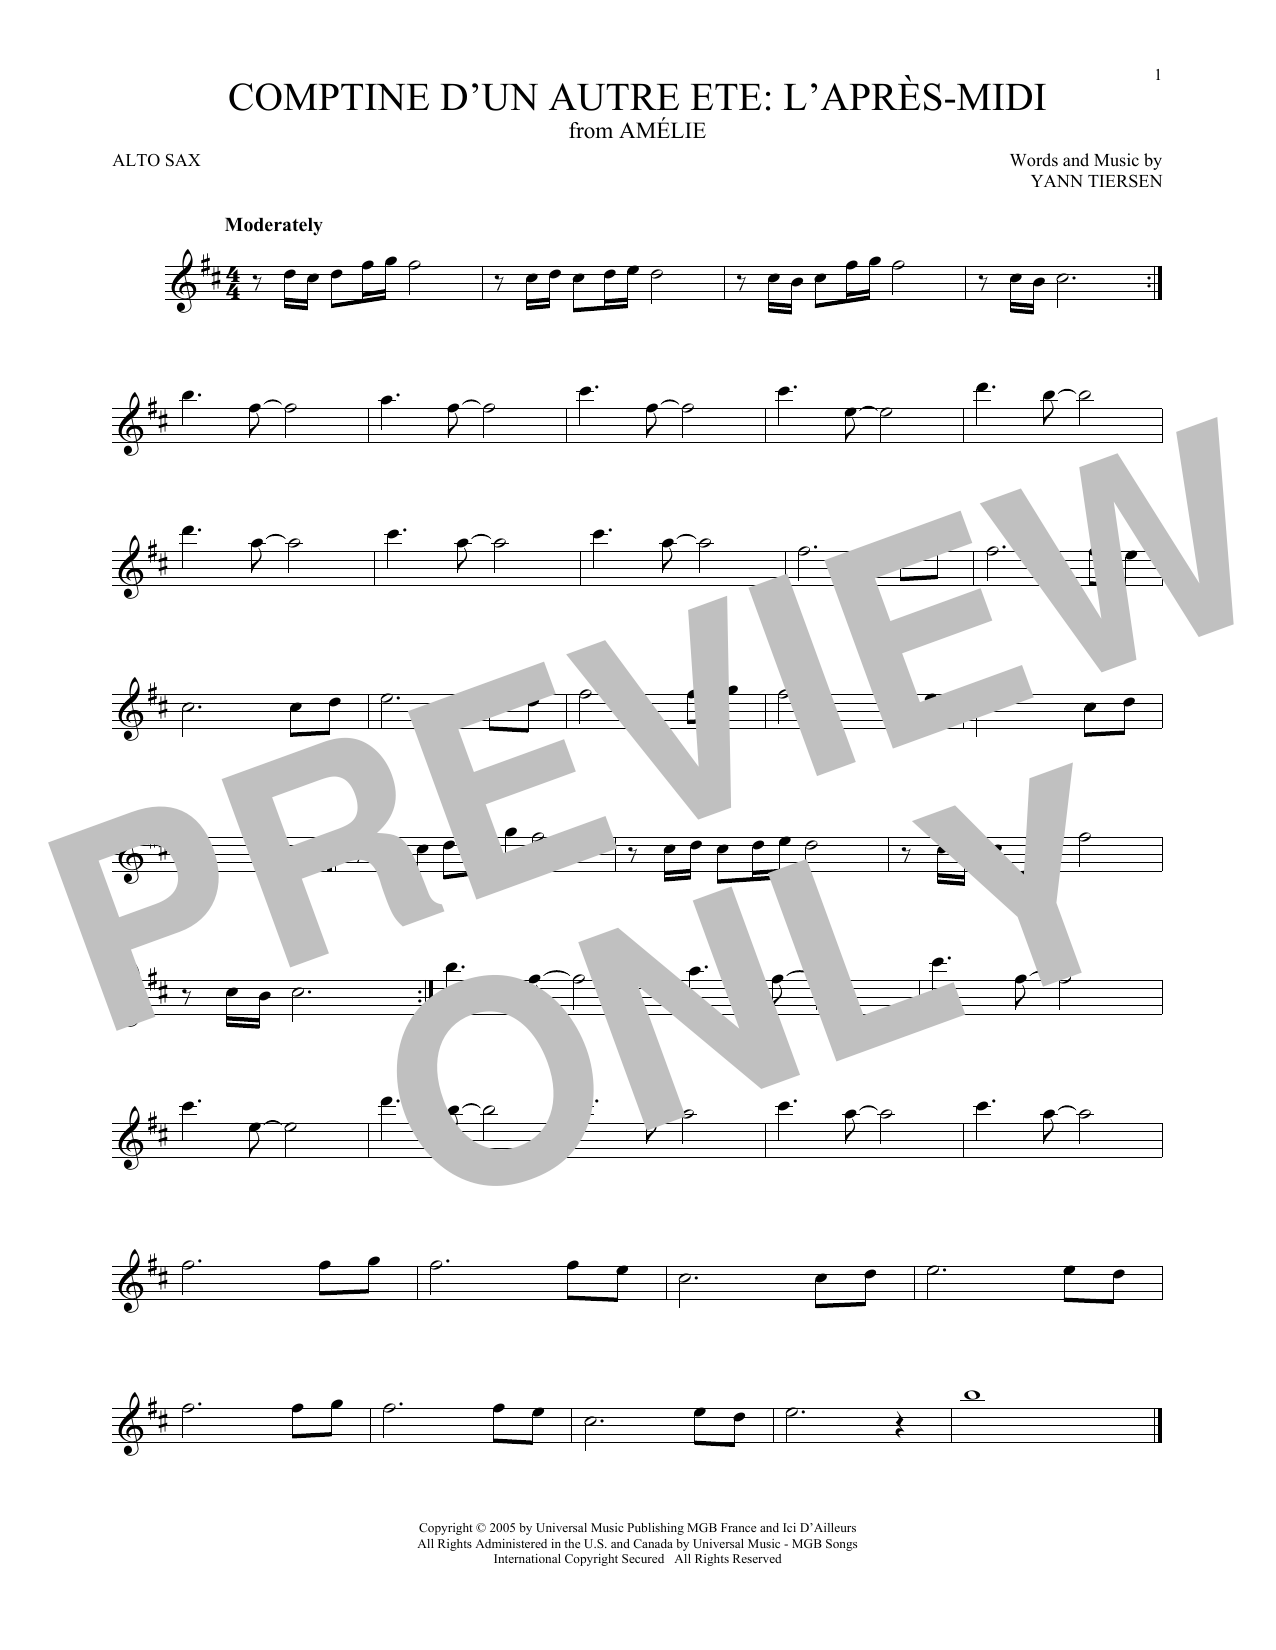 Yann Tiersen Comptine d'un autre été: L'après-midi (from Amelie) Sheet Music Notes & Chords for Trombone Solo - Download or Print PDF